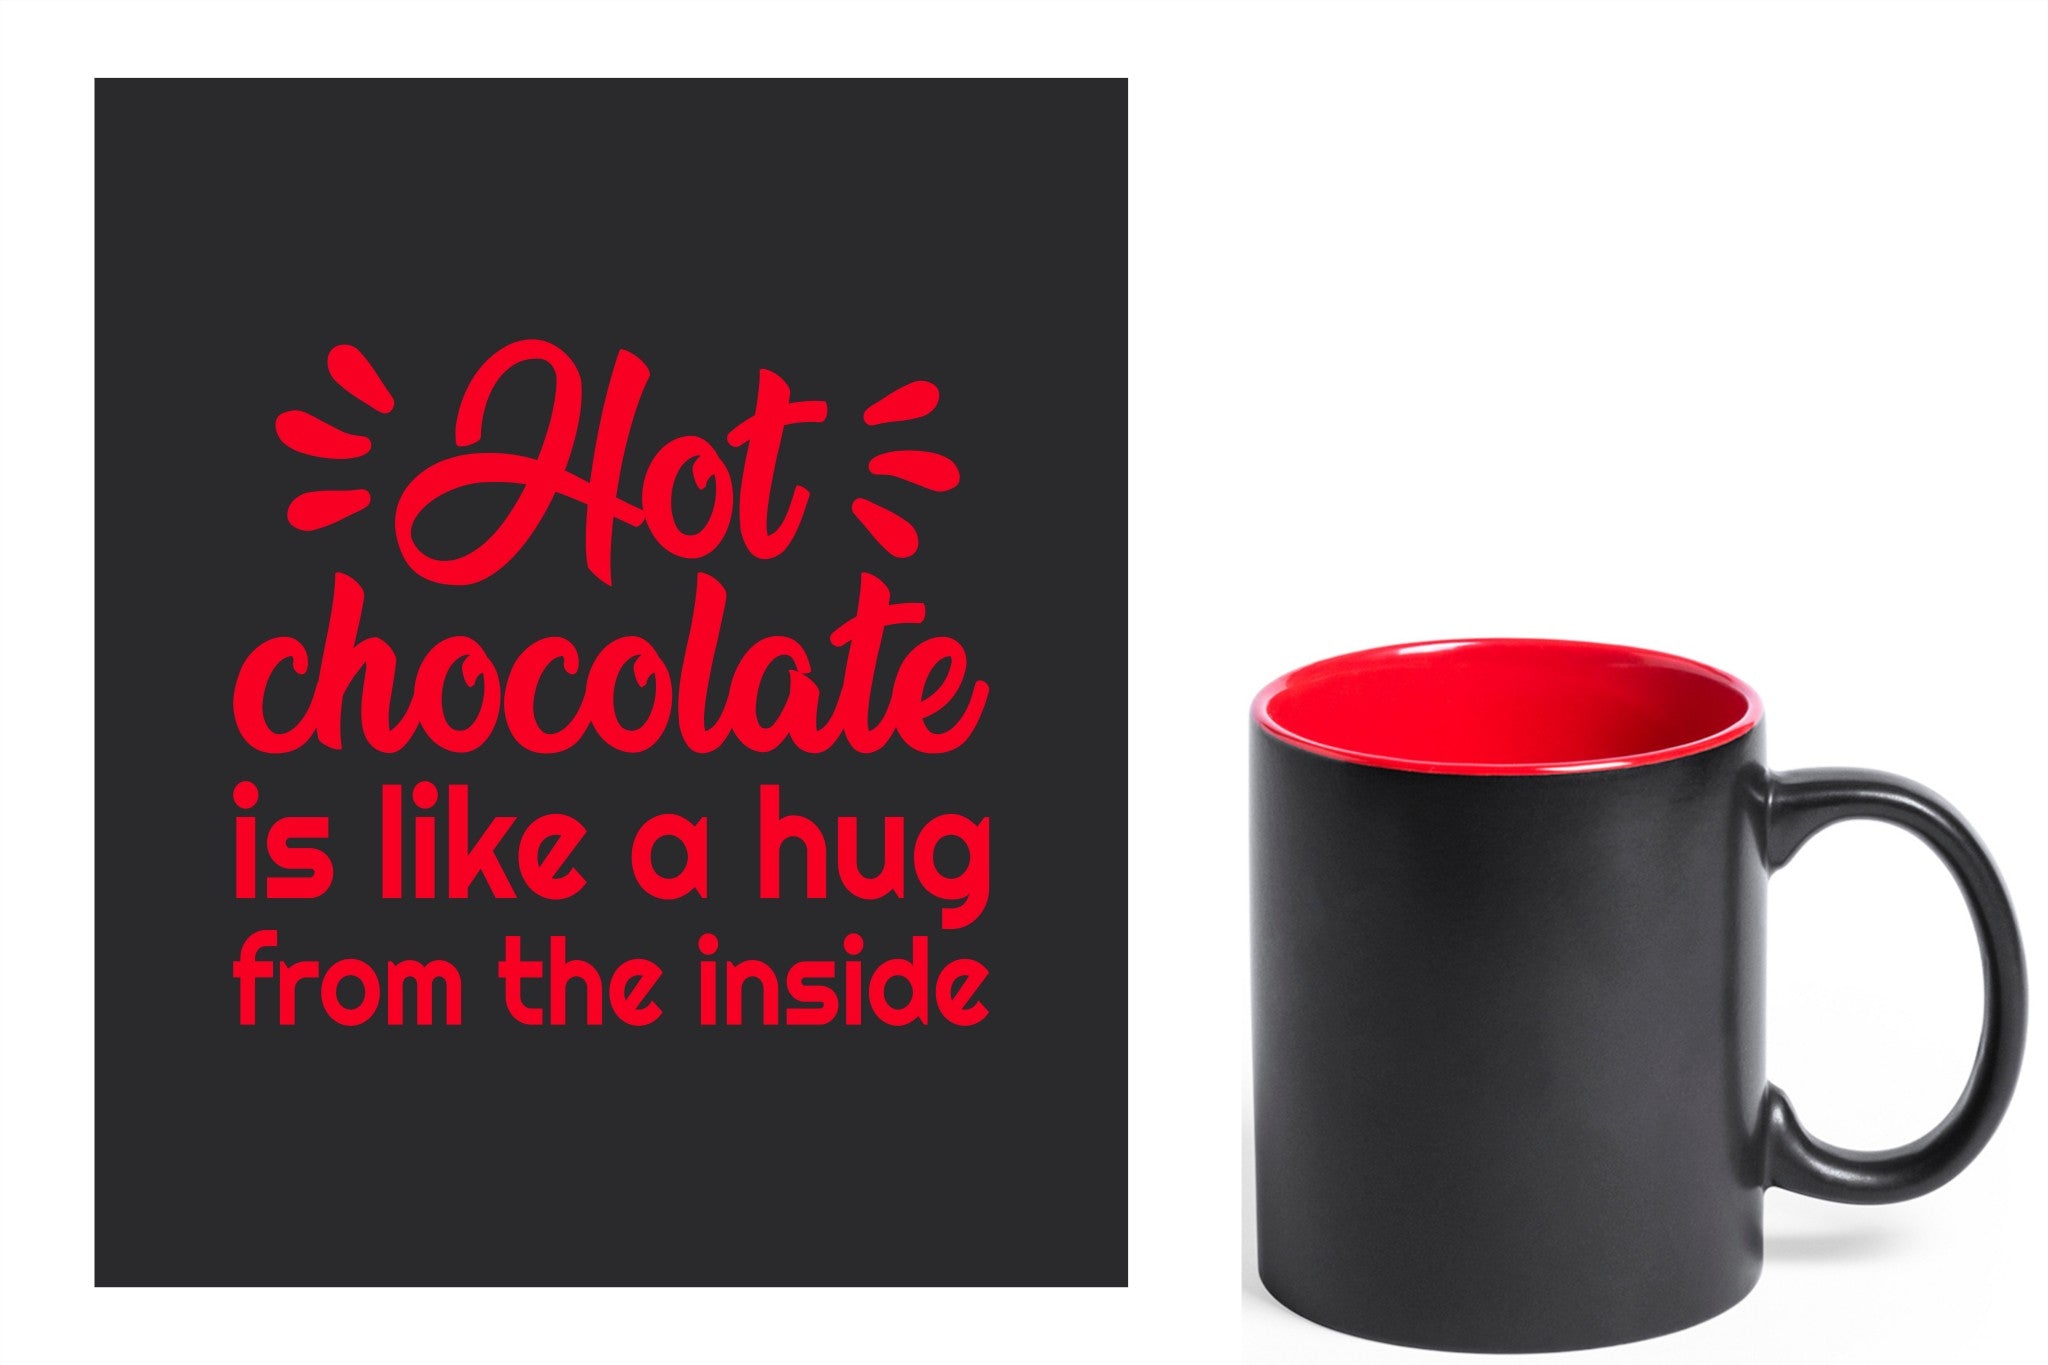 zwarte keramische mok met rode gravure  'Hot chocolate is like a hug from the inside'.